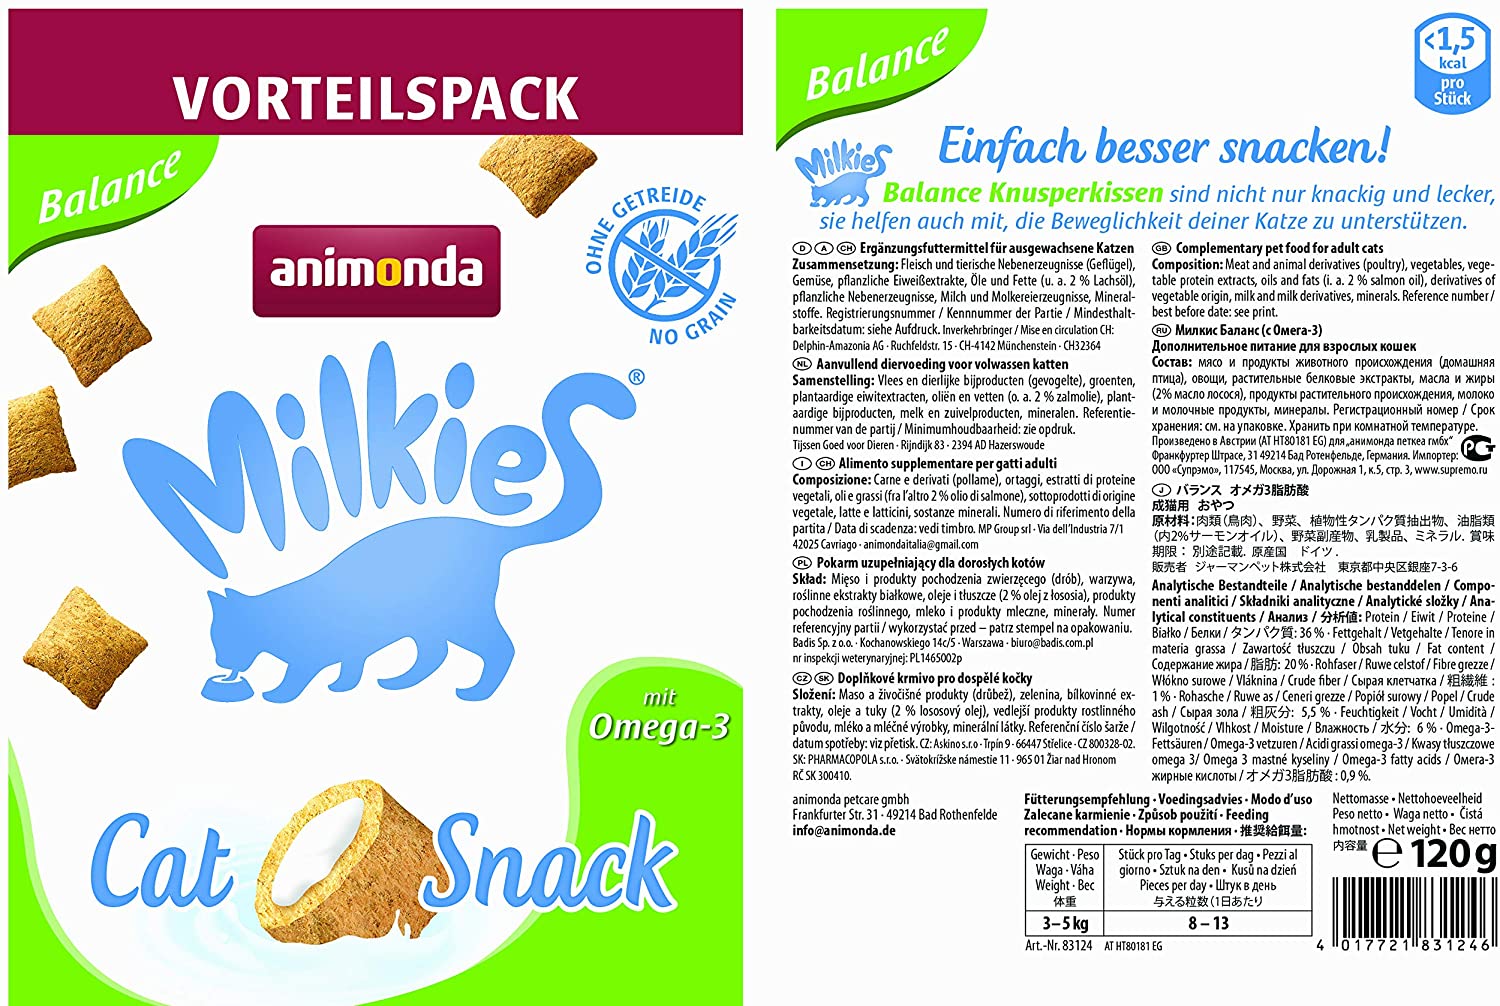  animonda Milkies - Cojín para Gatos, sin Cereales 